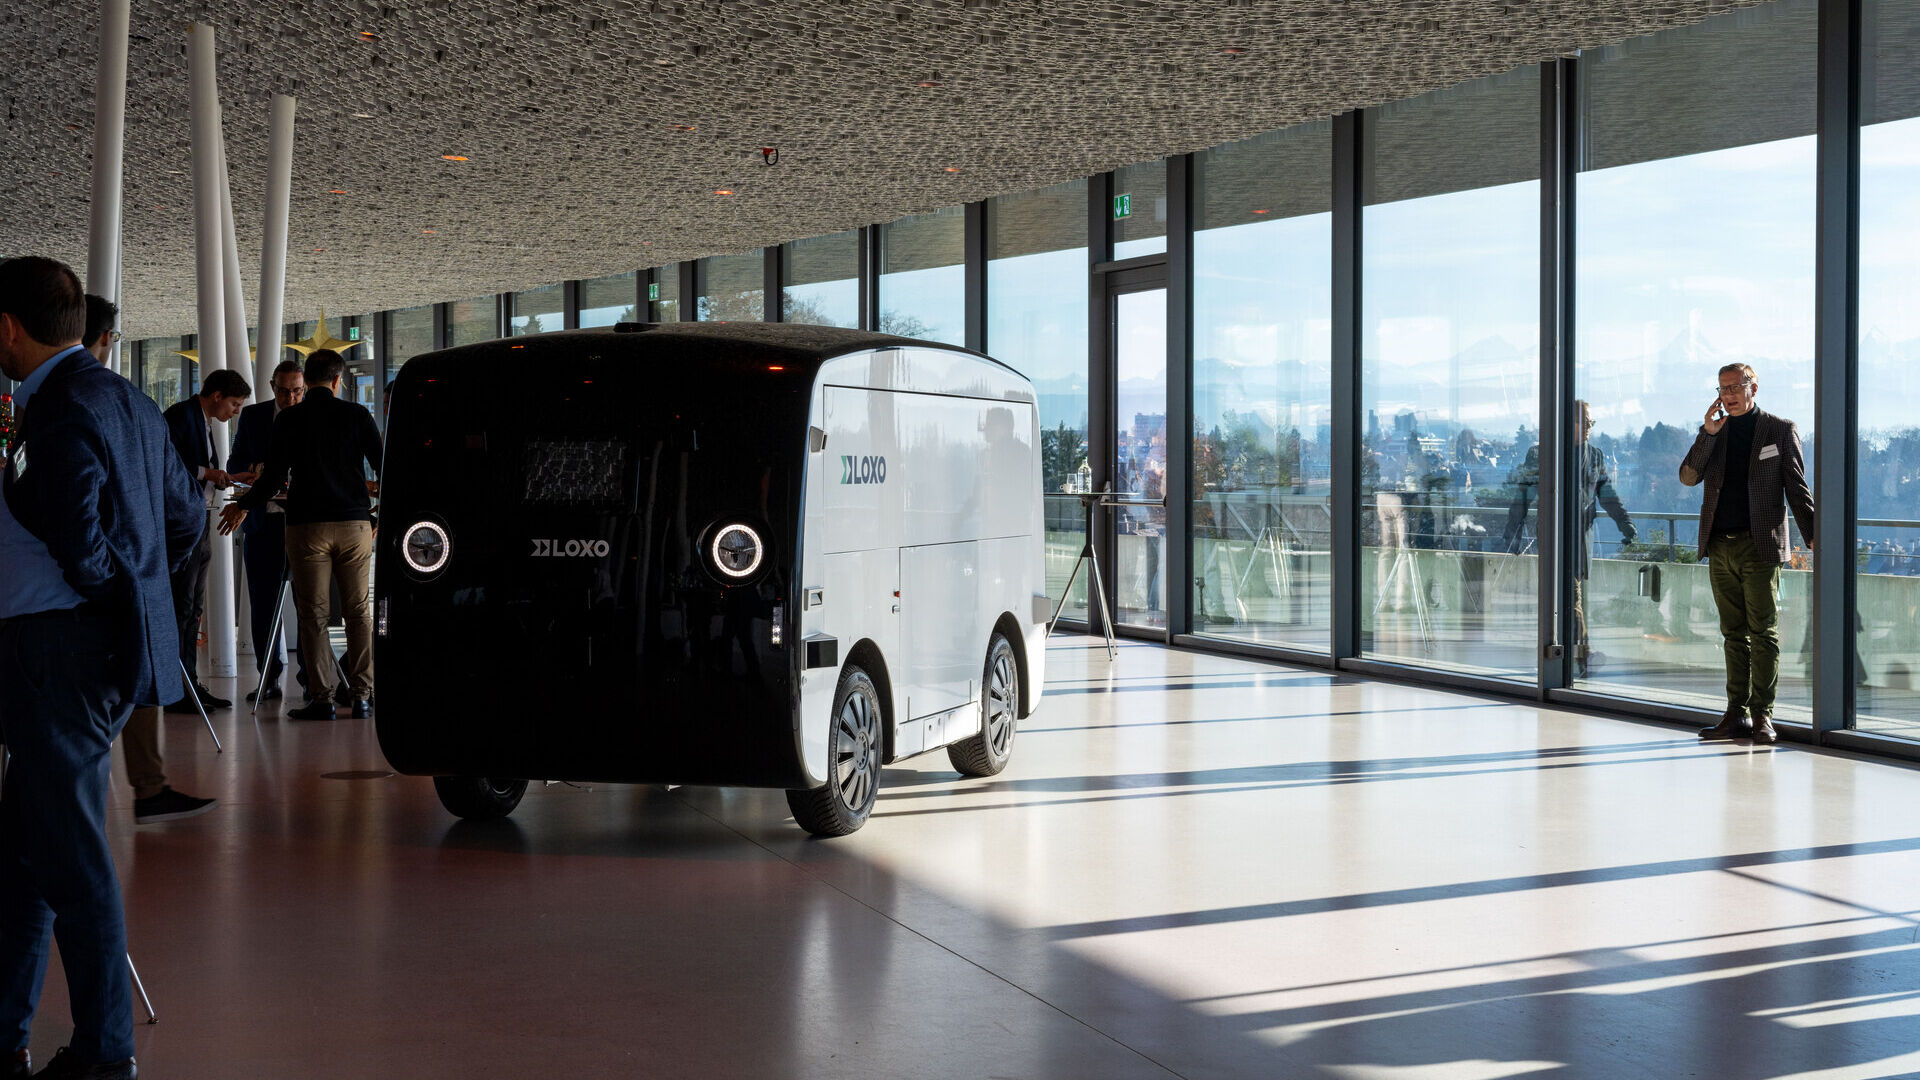 LOXO: Alpha ist ein vollständig in der Schweiz hergestellter selbstfahrender Van, der am 6. Dezember 2022 im Kursaal in Bern im Rahmen einer Pressekonferenz des Start-ups LOXO vorgestellt wurde